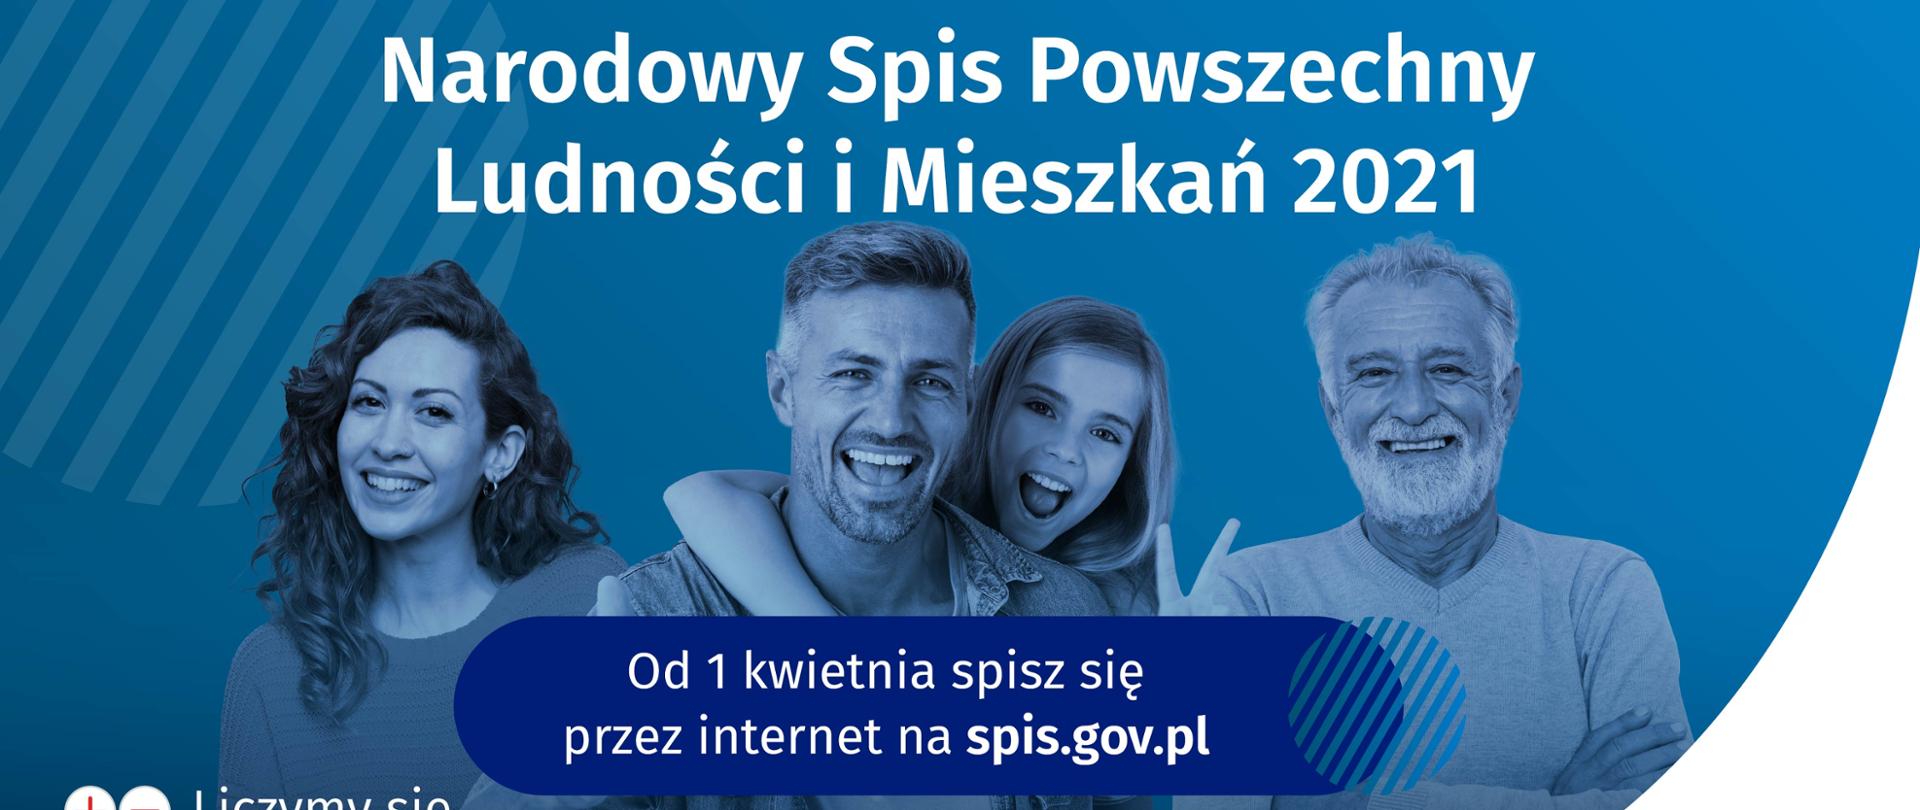 Banner informacyjny o Narodowym Spisie Powszechnym, osoby na niebieskim tle, napis "wejdź na spis.gov.pl i spisz się! Spis trwa od 1 kwietnia",